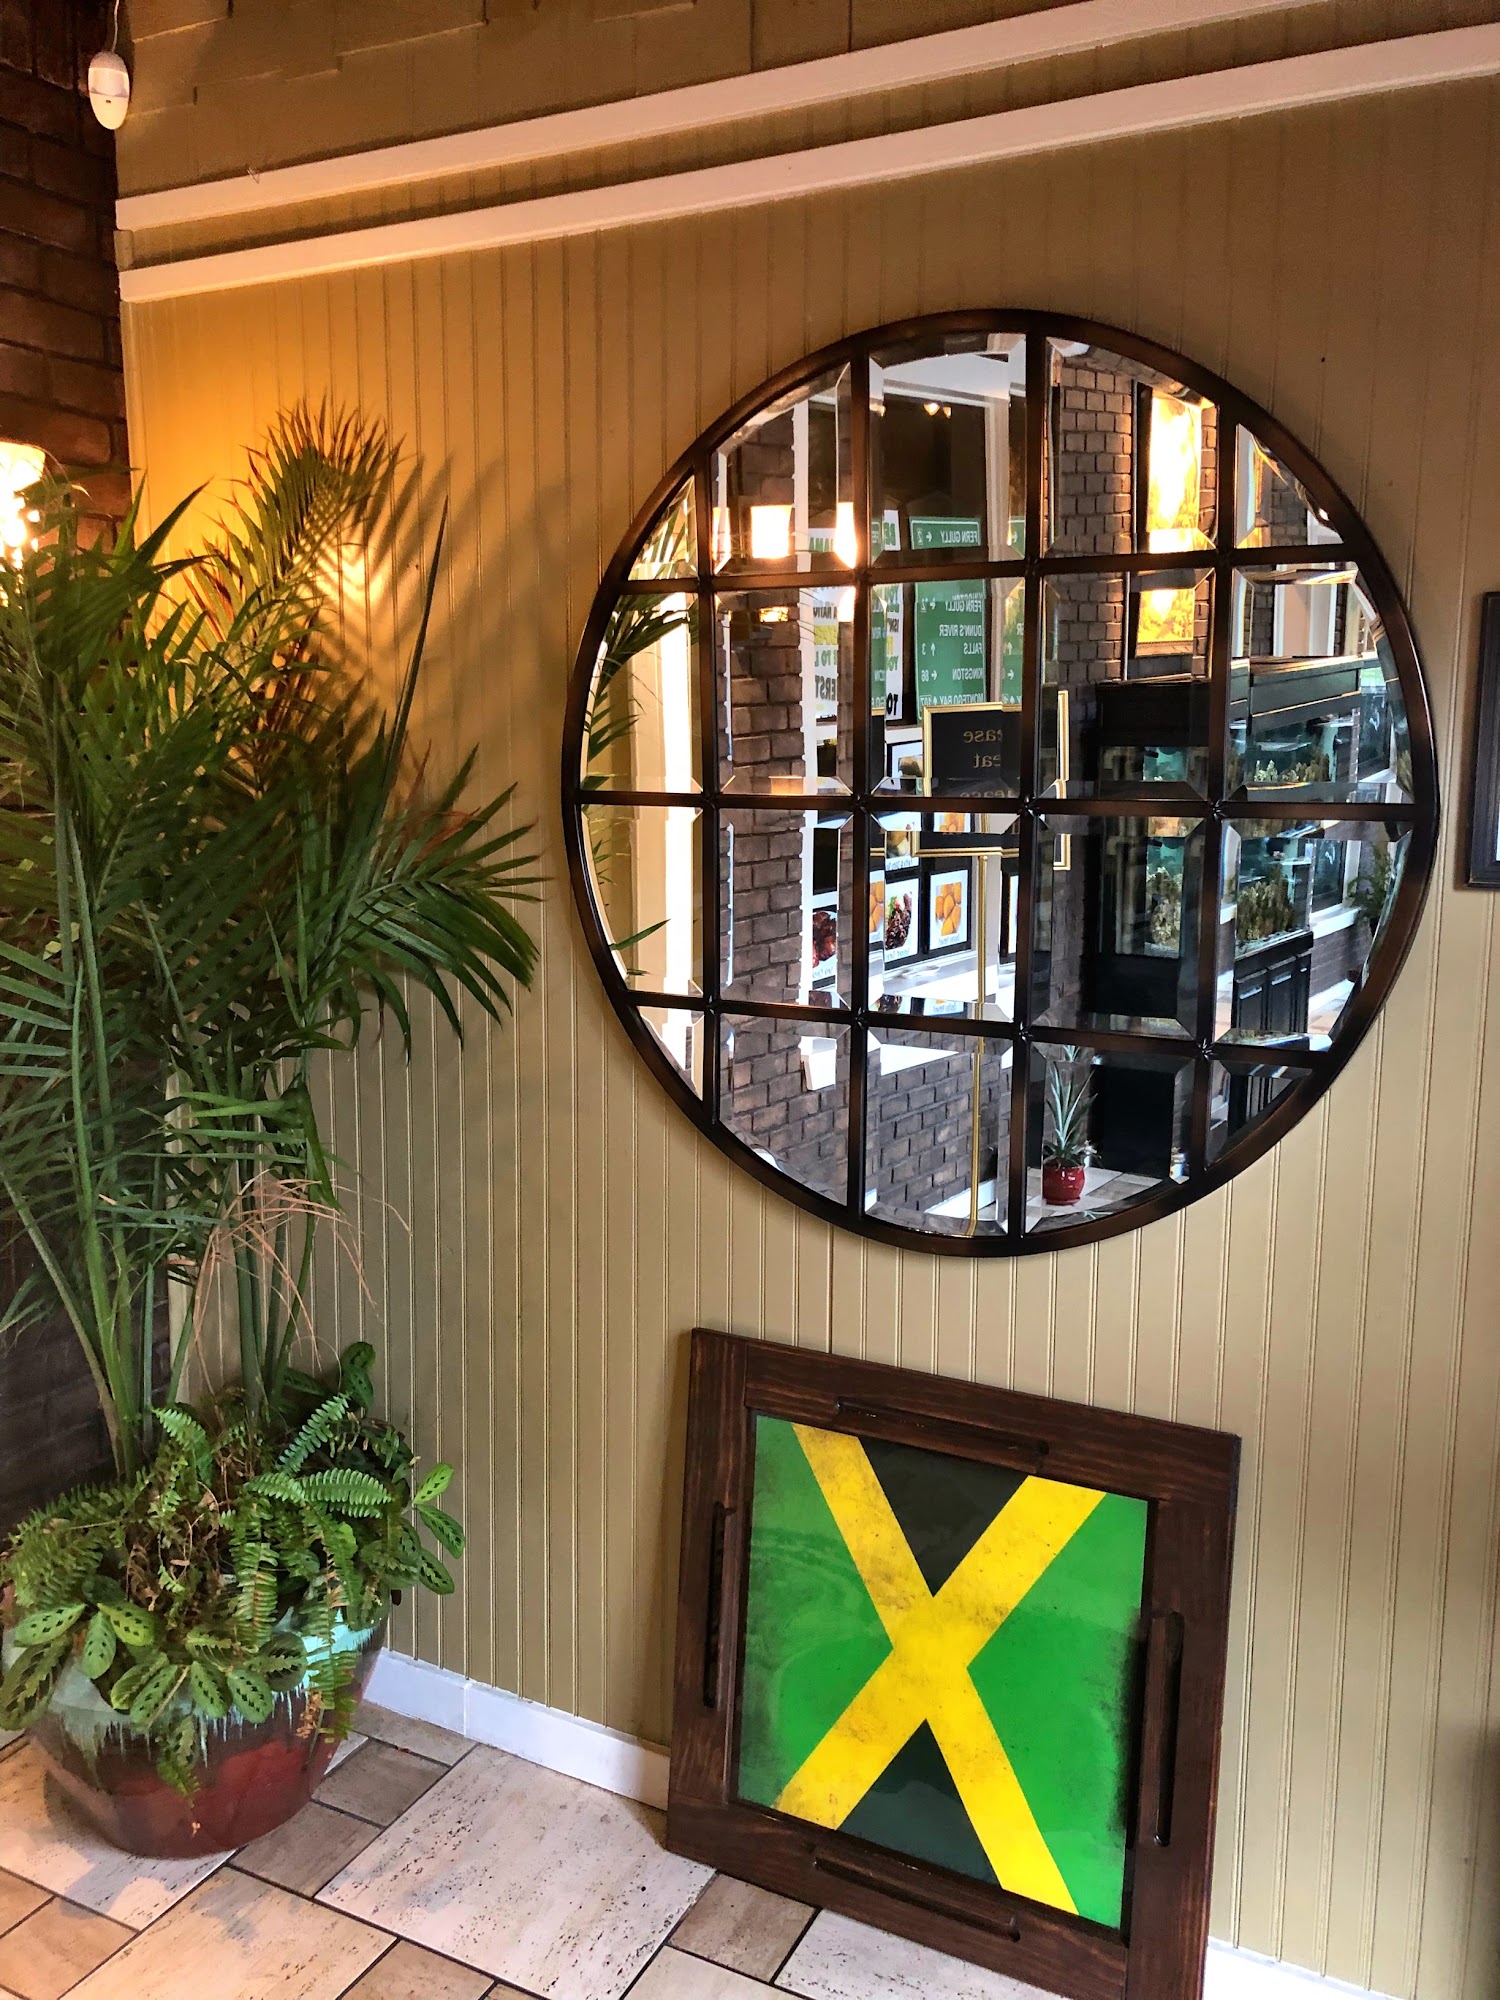 Fern Gully Jamaican Cafe